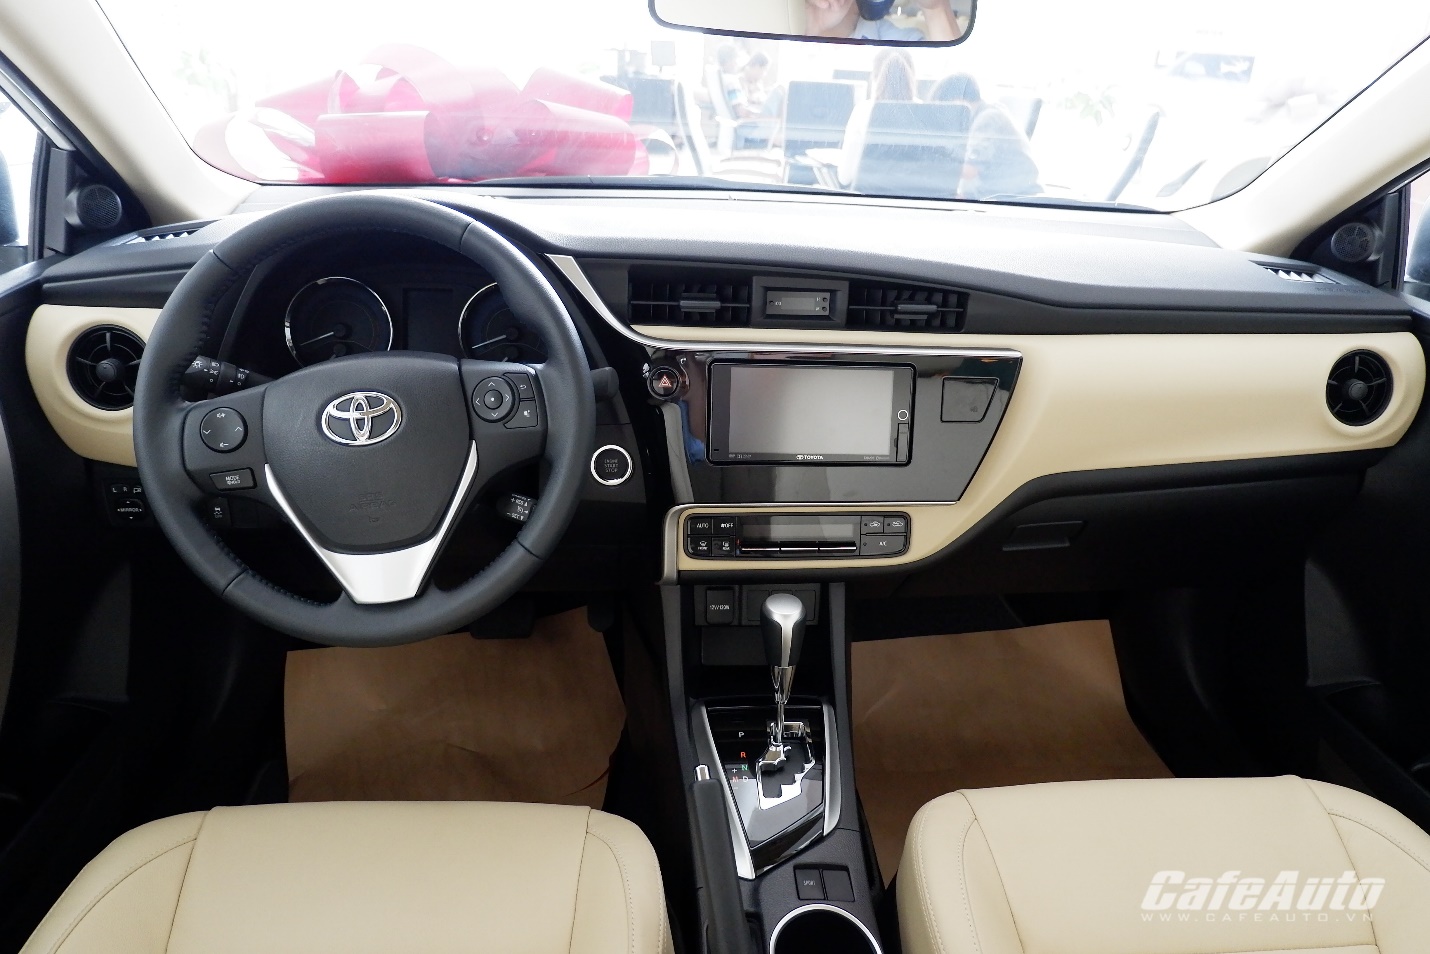 Toyota Corolla Altis phiên bản nâng cấp: bổ sung hệ thống Cruise Control, giá tăng nhẹ - ảnh 2